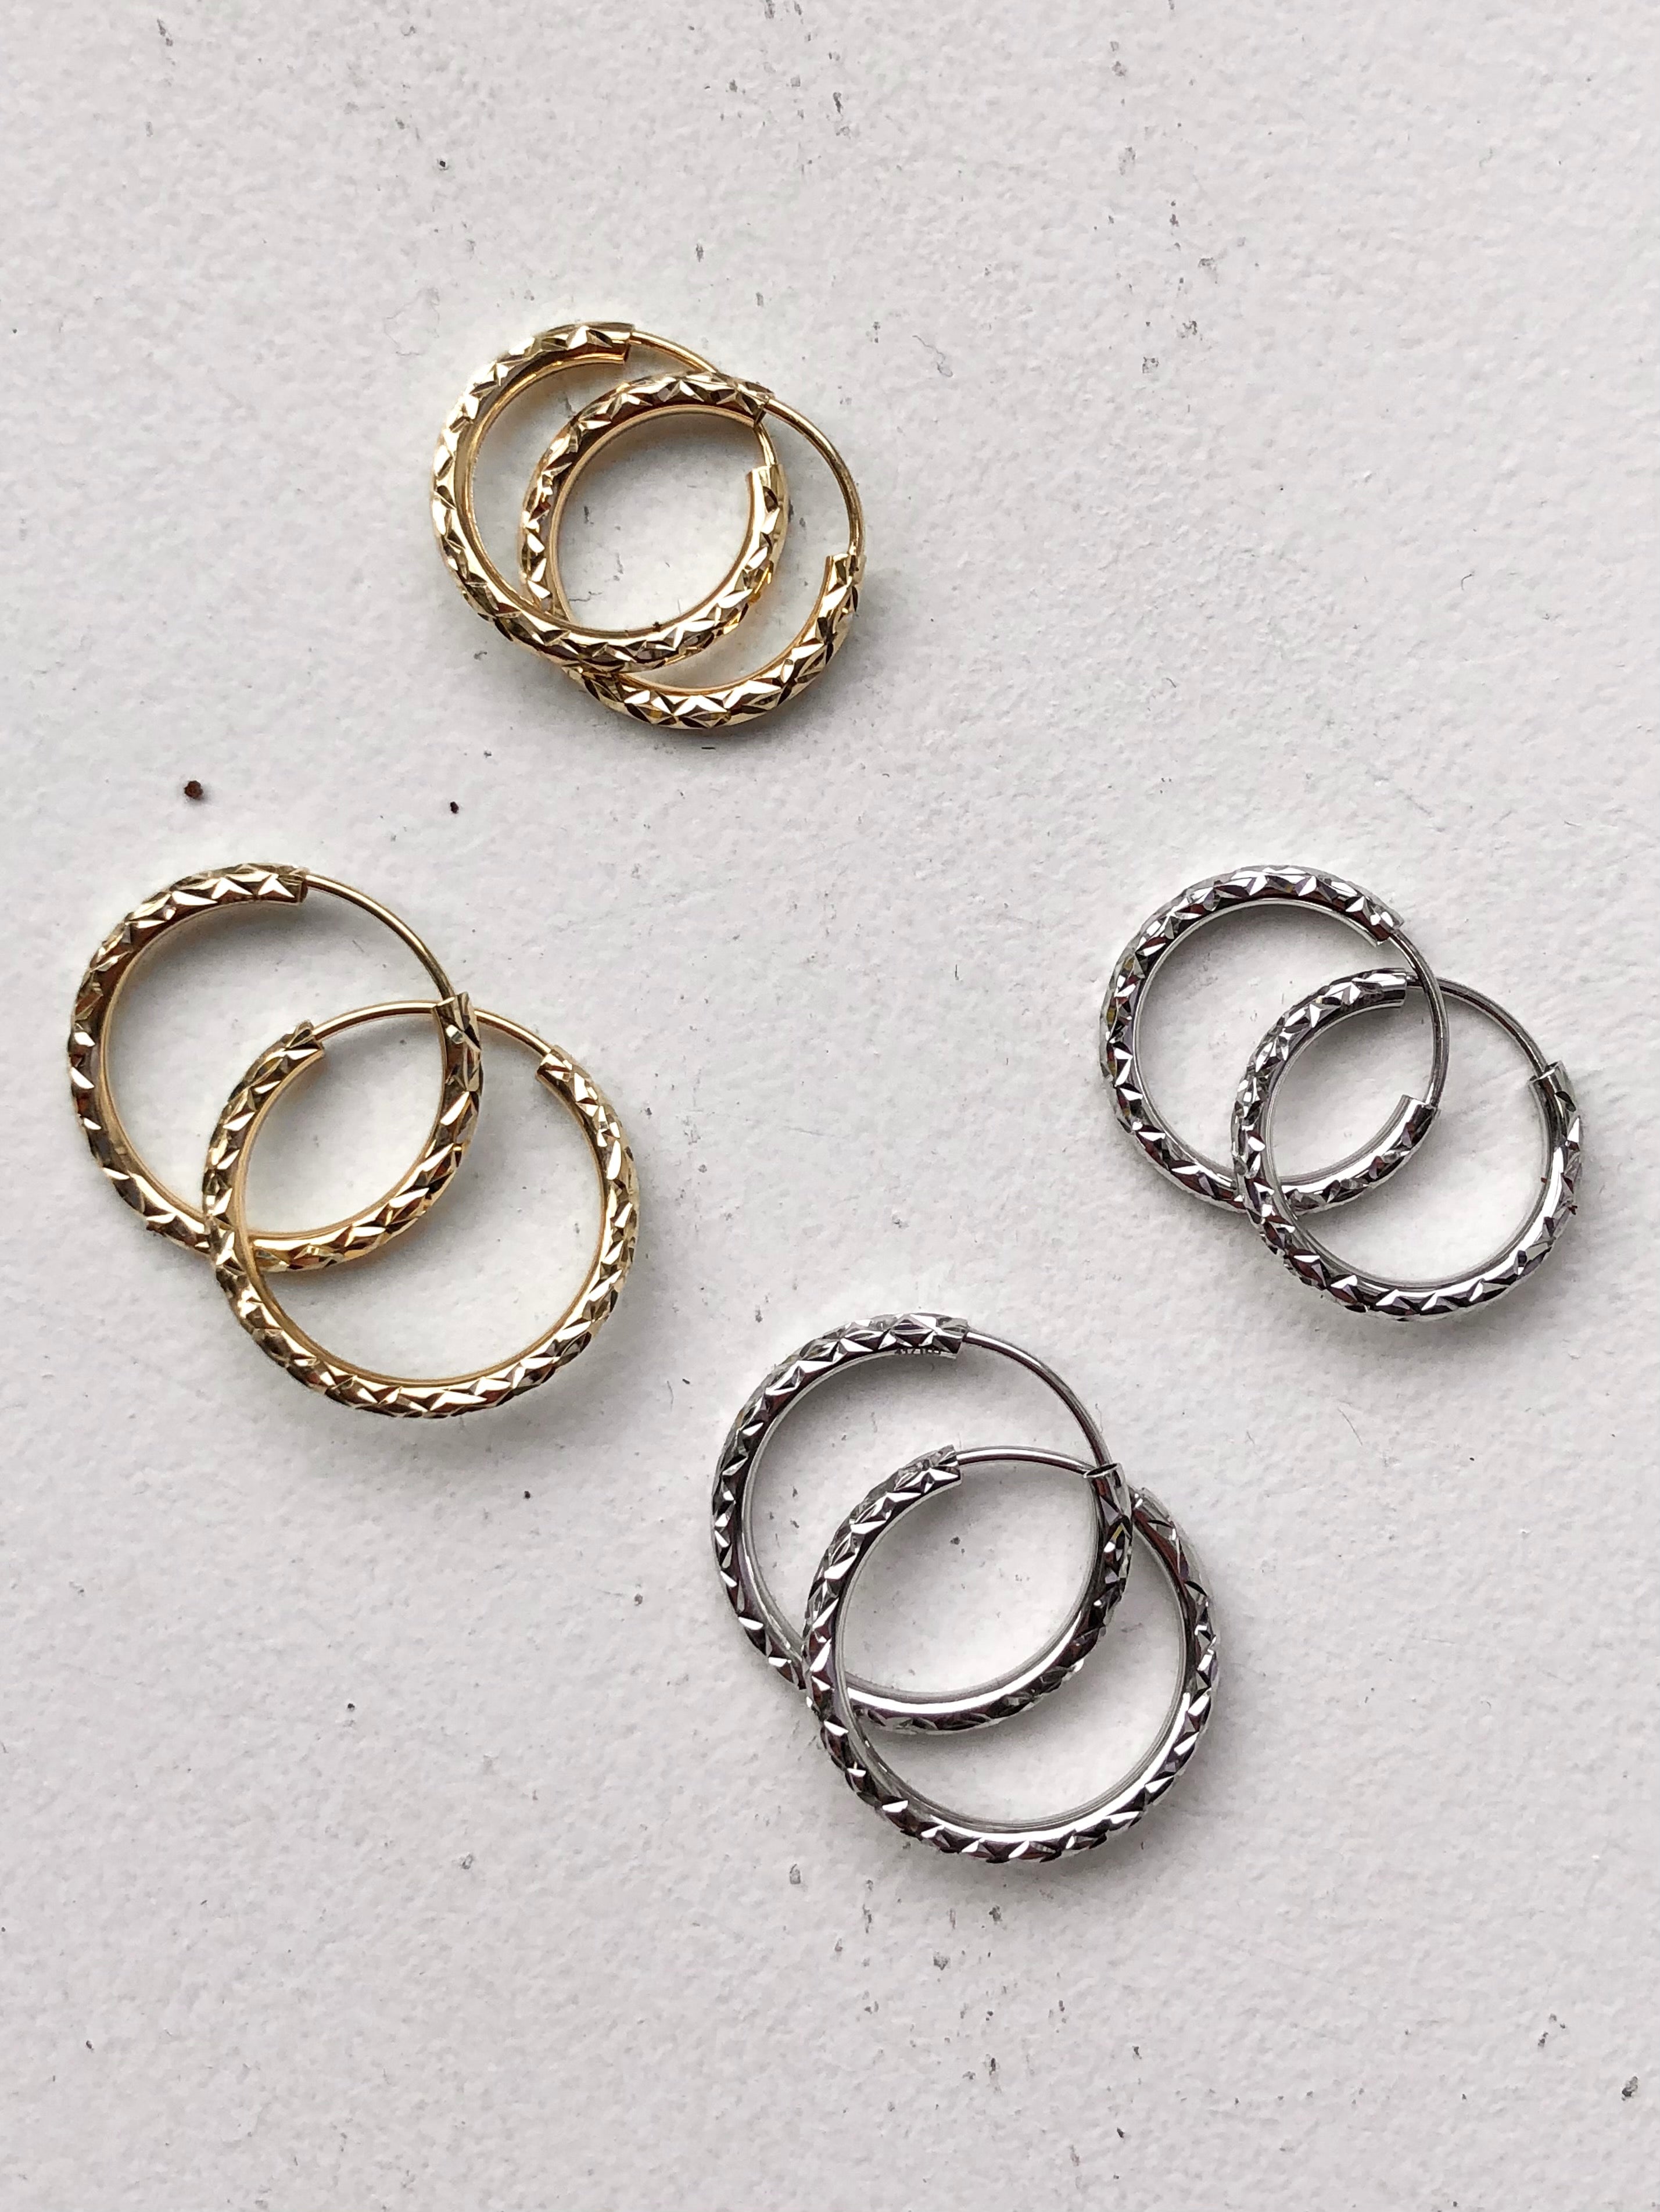 Fluence 14K Gold Diamond Hoop Earrings Inside Outside Flexible Button  Safety Lock Vesana Jewelry – VESANA JEWELRY™️